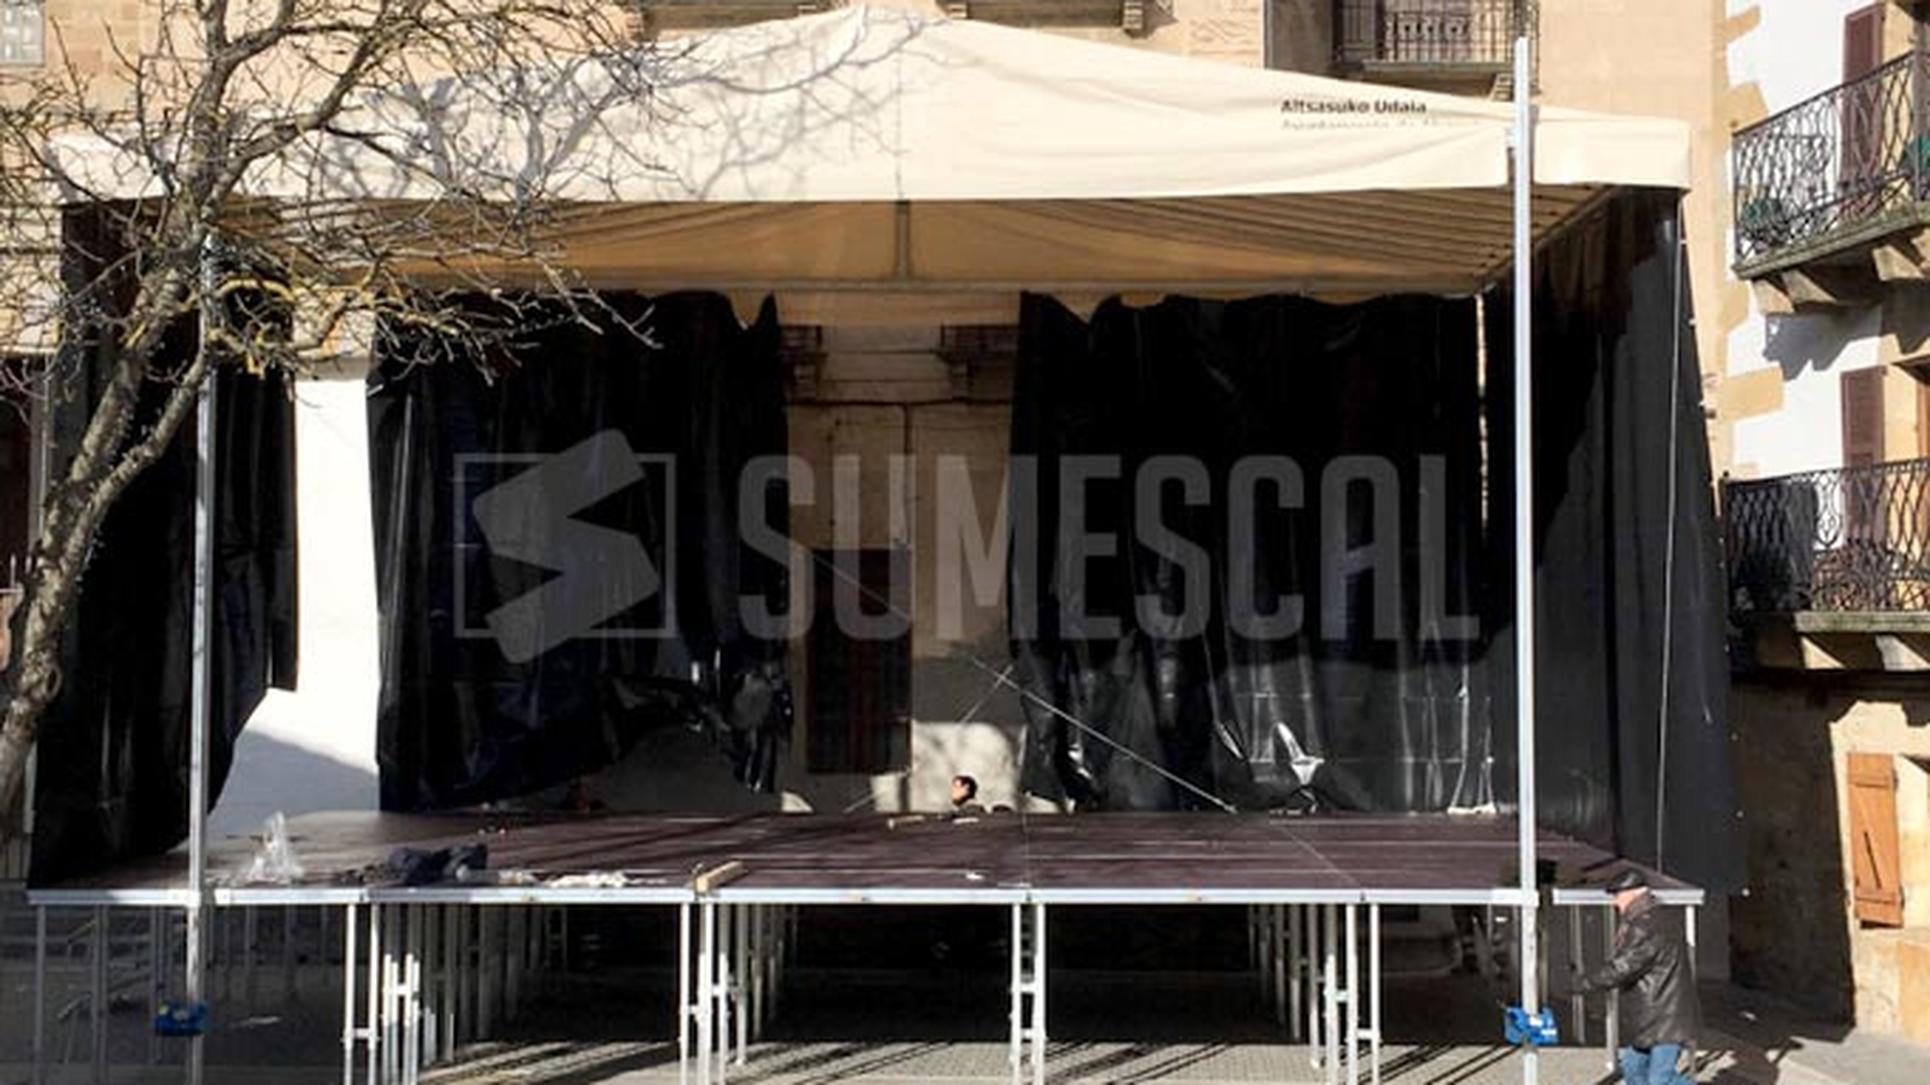 Sumescal – Escenario con cubierta, Alsasua  Montaje y fabricante de tarimas  estructuras espejos escenarios estudios